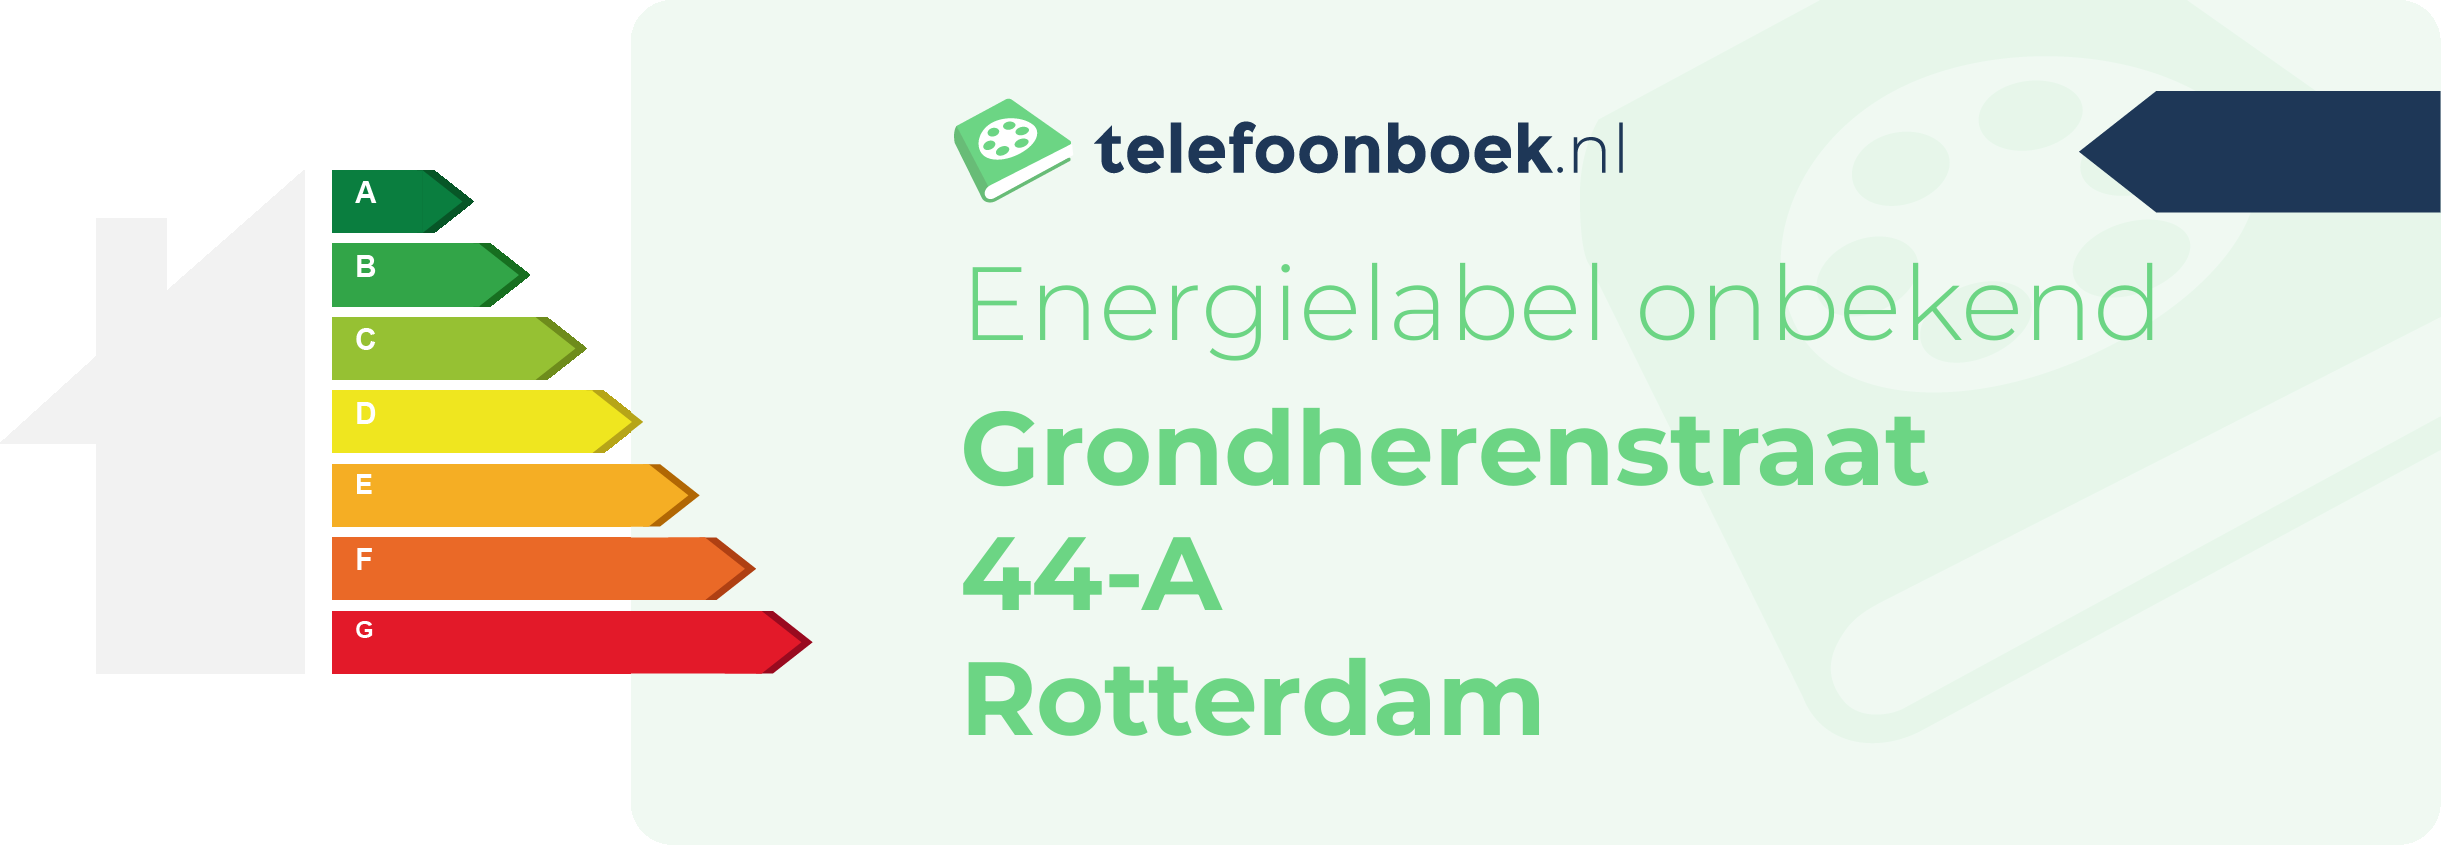 Energielabel Grondherenstraat 44-A Rotterdam